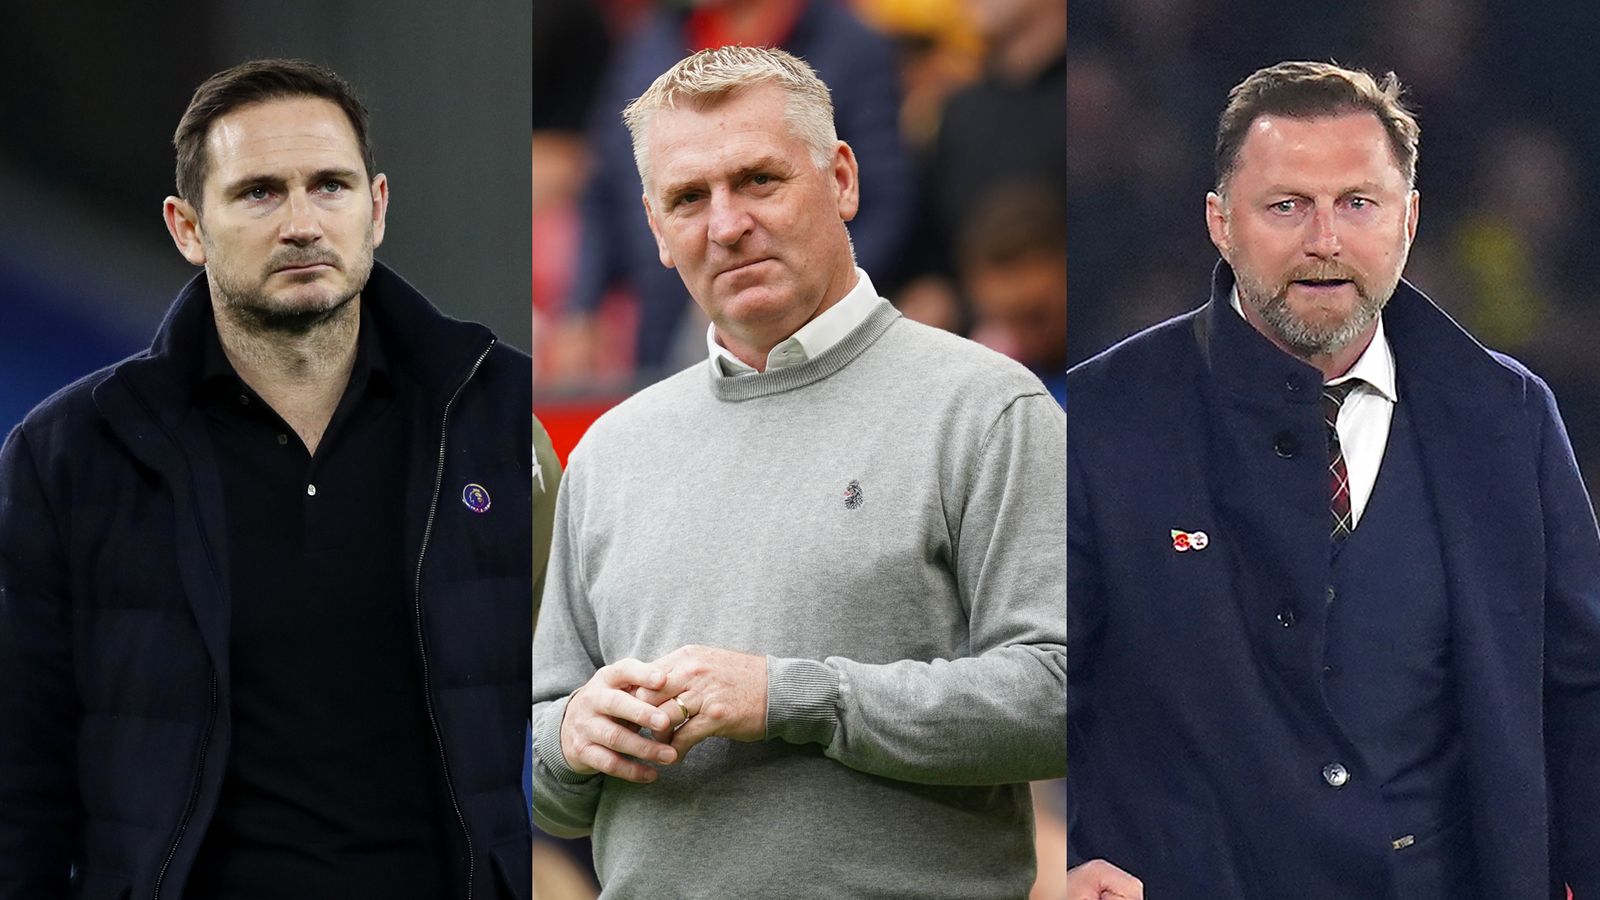 Norwich nominados preseleccionados Frank Lampard, Dean Smith y Ralph Hsenhuttl de Southampton Nuevo entrenador |  noticias de futbol